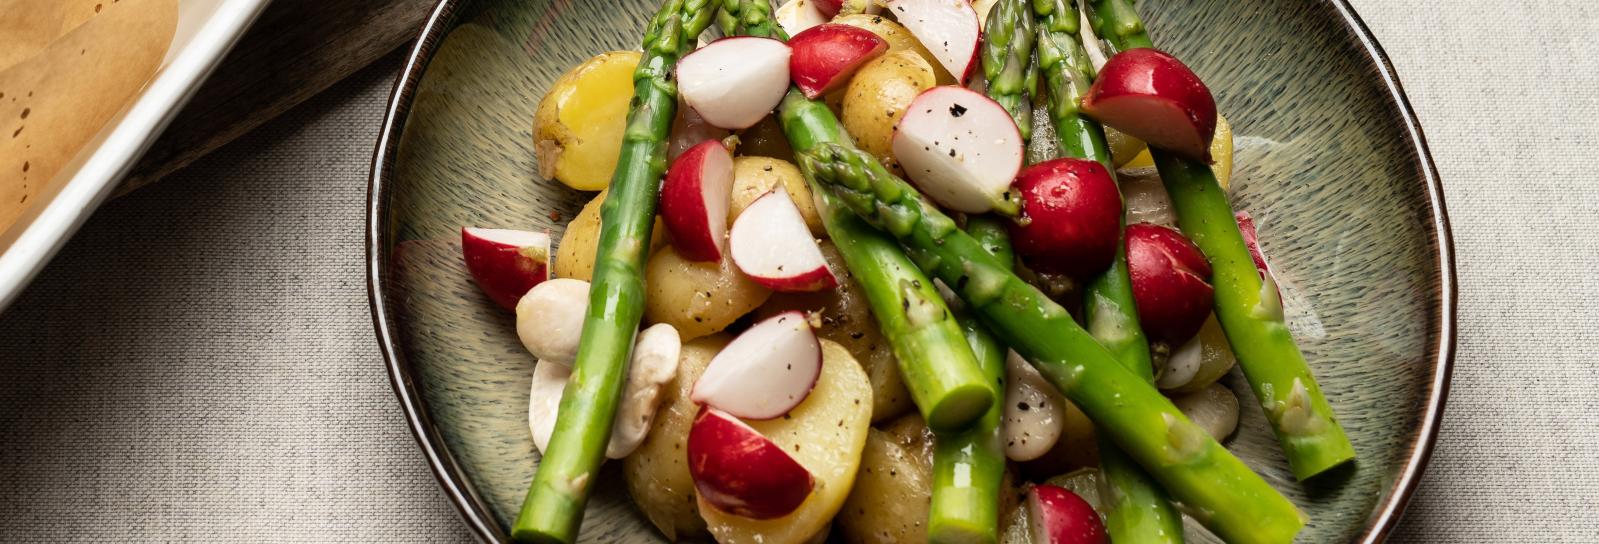 Salat af kartofler, radiser, hvide bønner og asparges